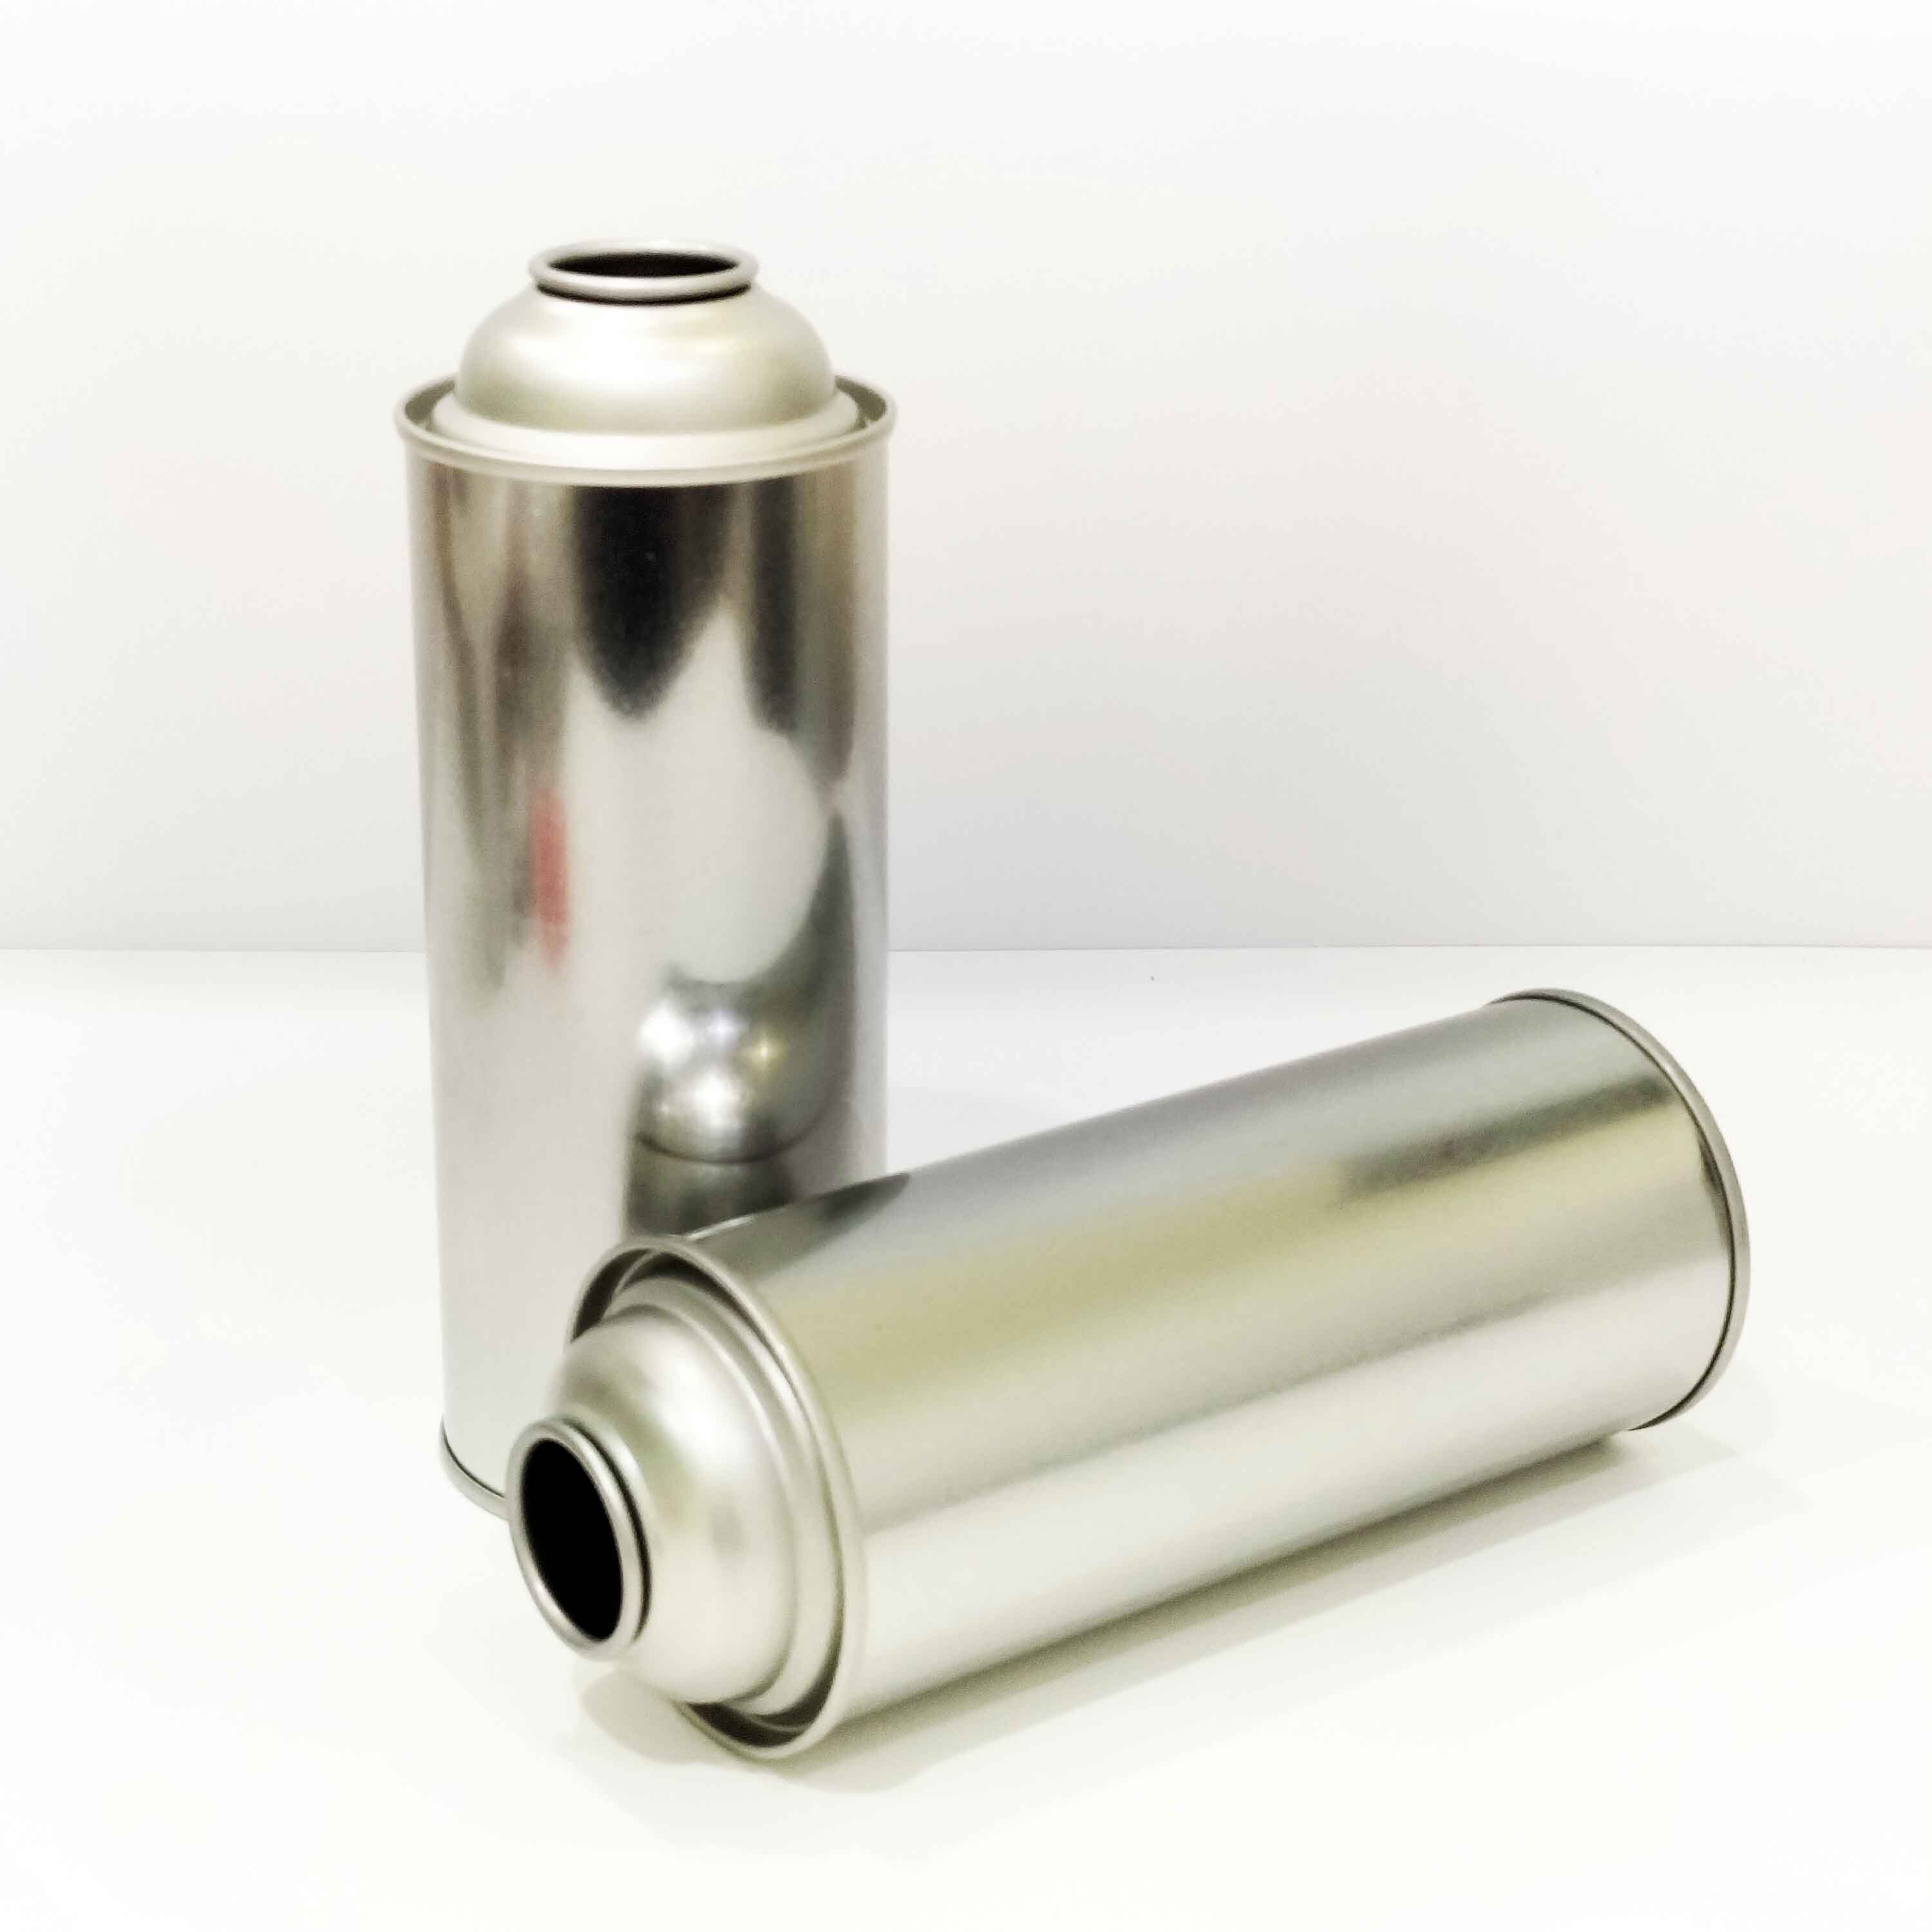 empty butane gas aerosol cans